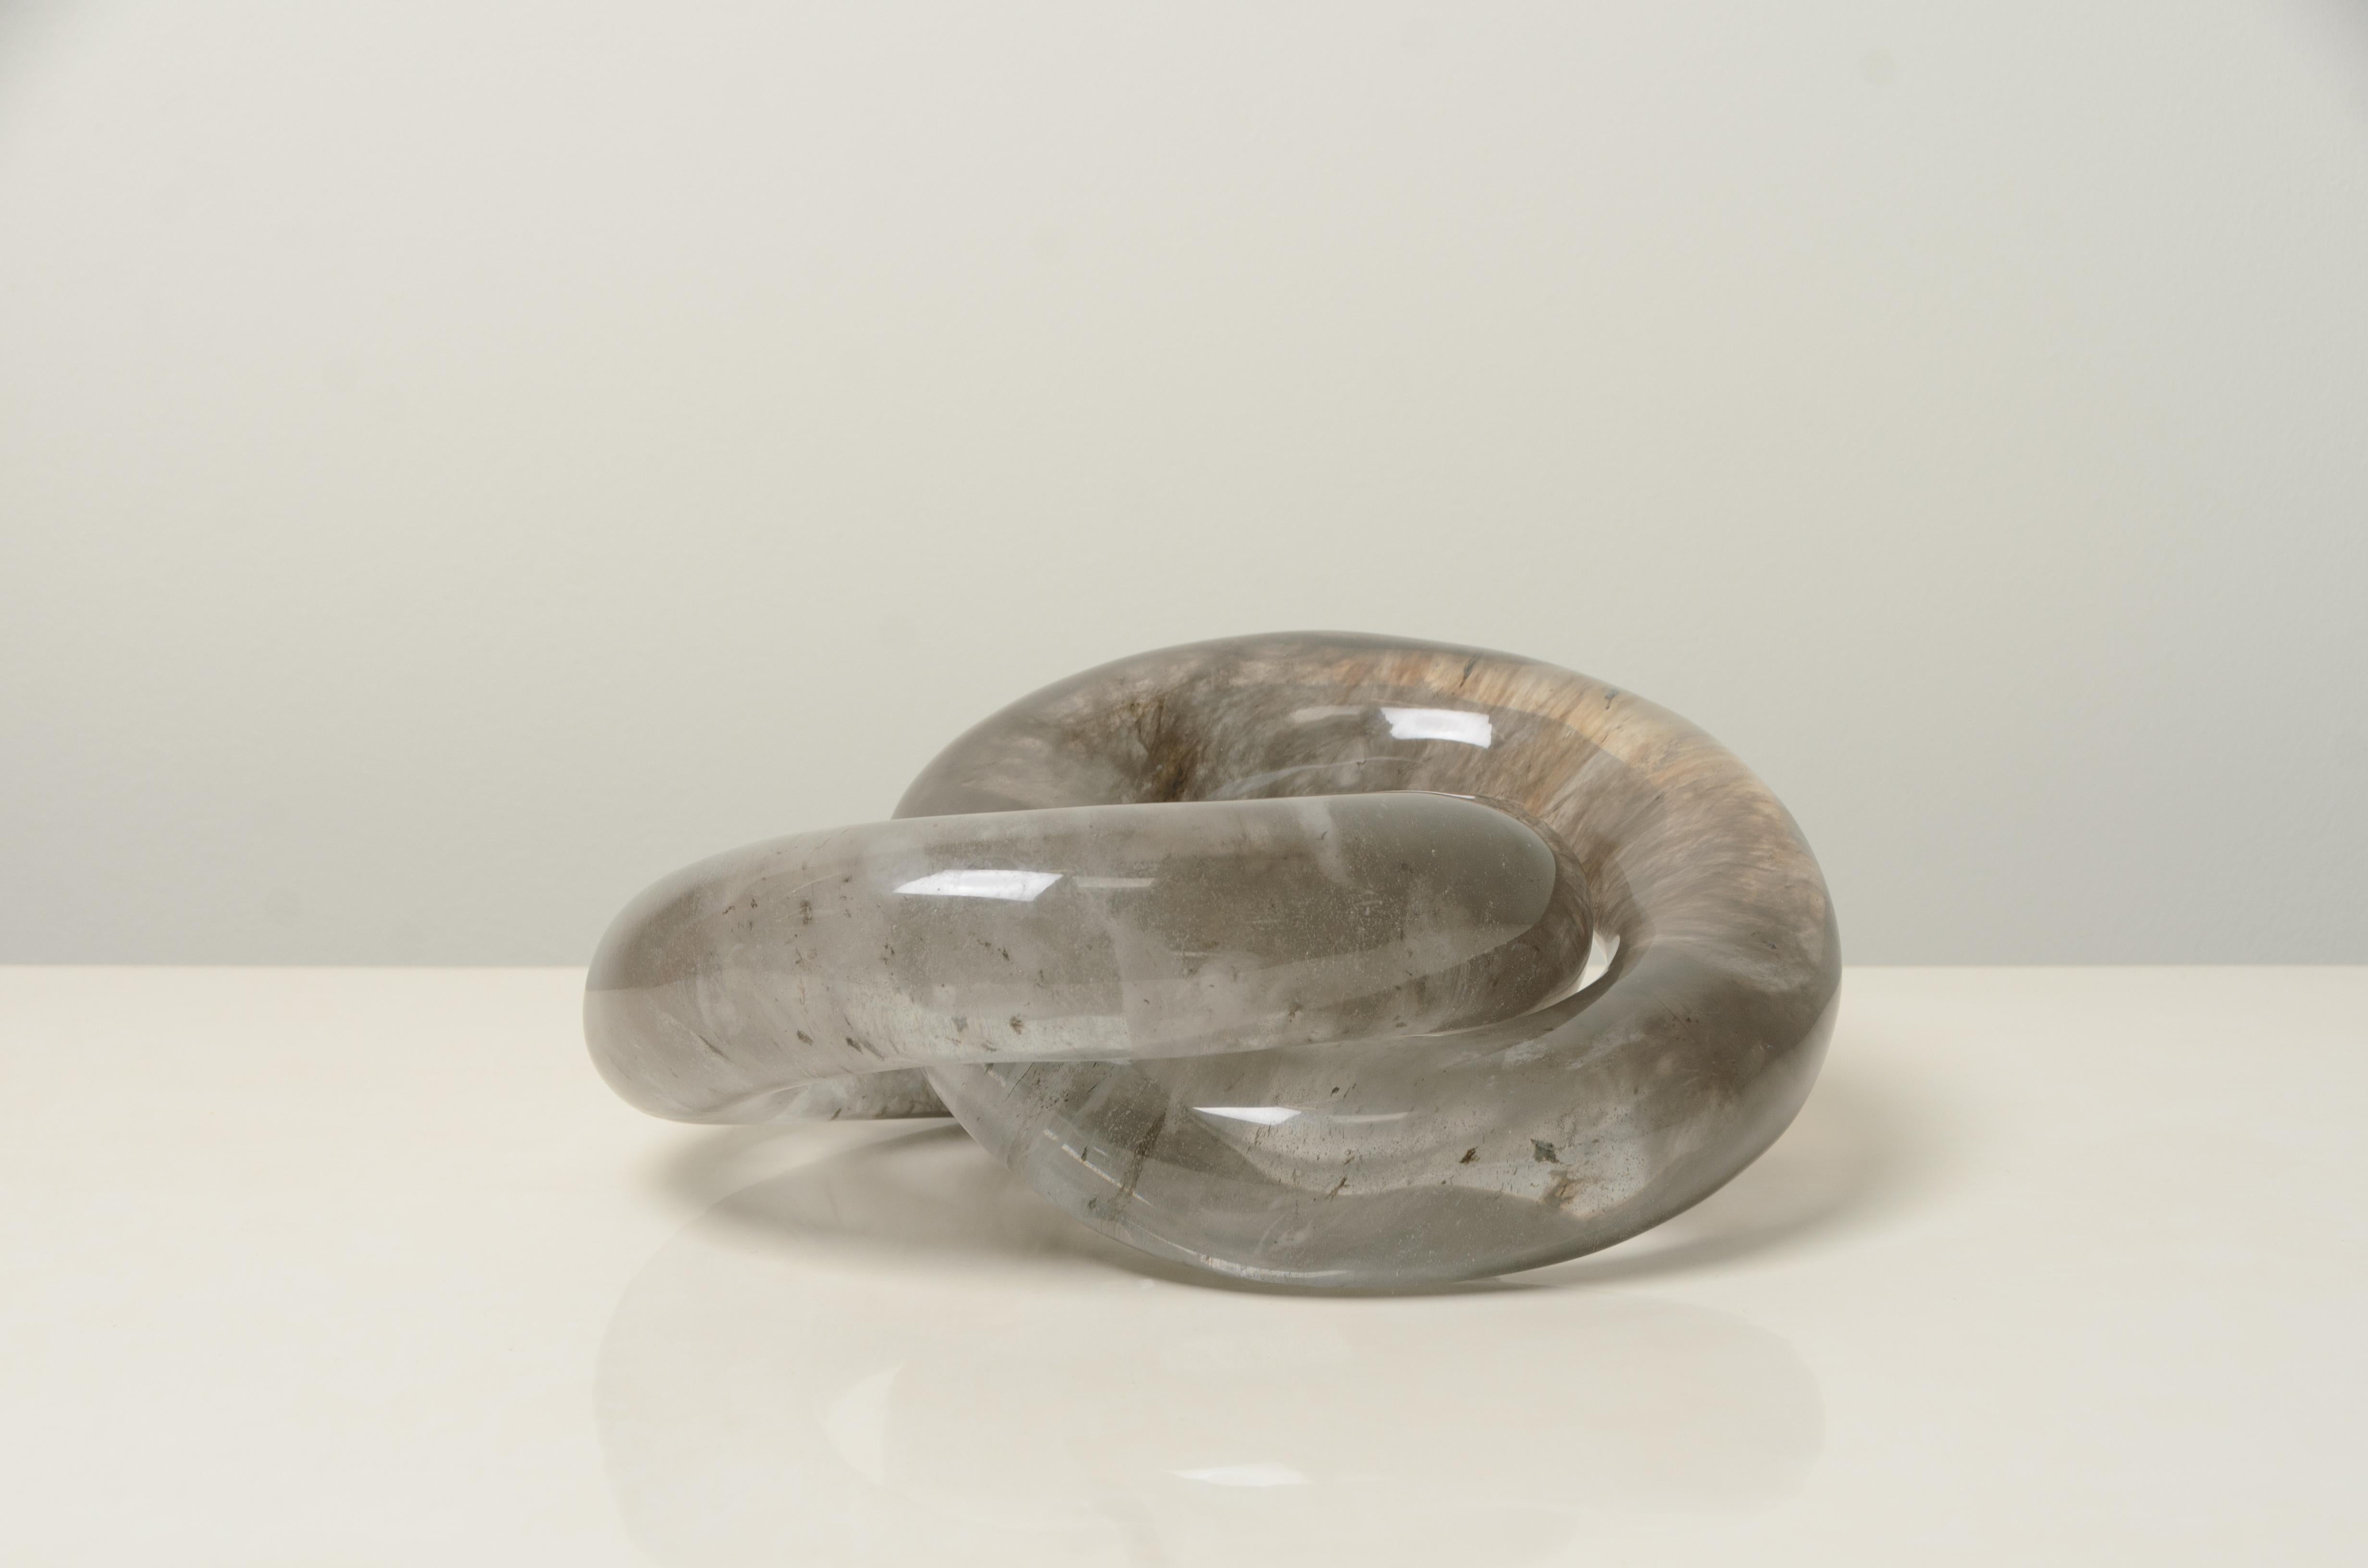 Doppelring-Glieder-Skulptur
Rauchkristall
Handgeschnitzt
Limitierte Auflage
Kristall Einschlüsse variieren

Geschnitzt mit Jadeschnitztechniken.  Jedes Stück wird individuell angefertigt und ist einzigartig. 